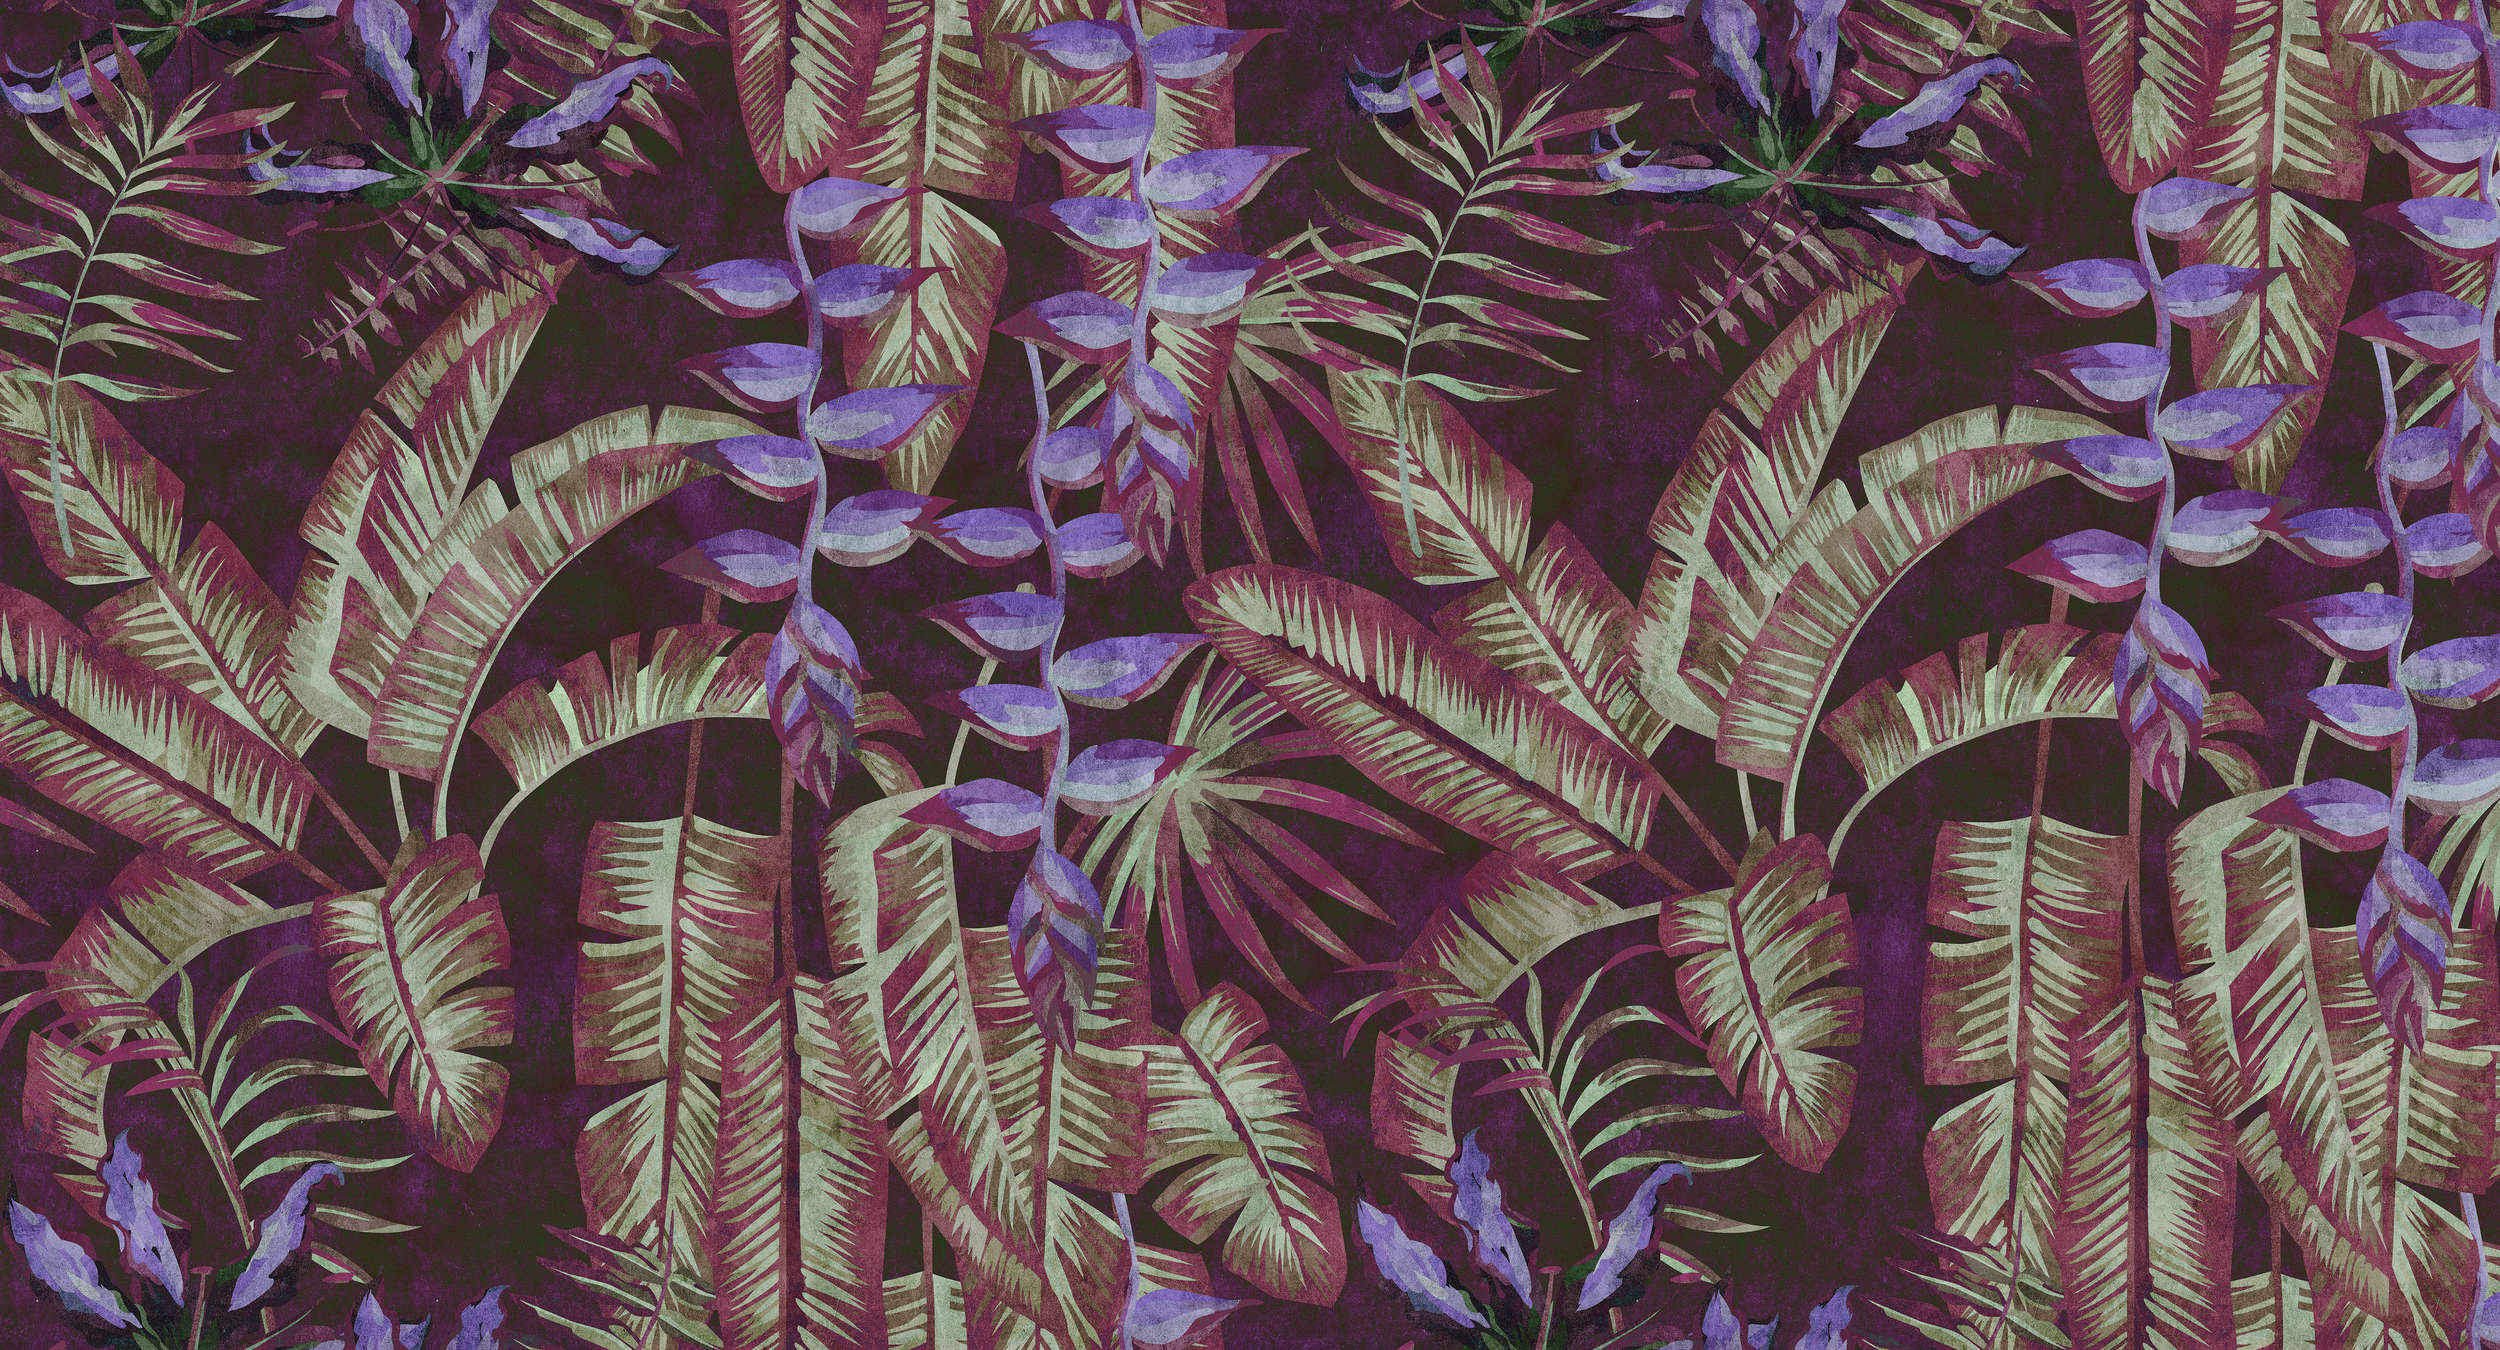             Tropicana 3 - Tropisch behang in vloeipapierstructuur met bladeren & varens - Rood, Paars | Mat glad vlies
        